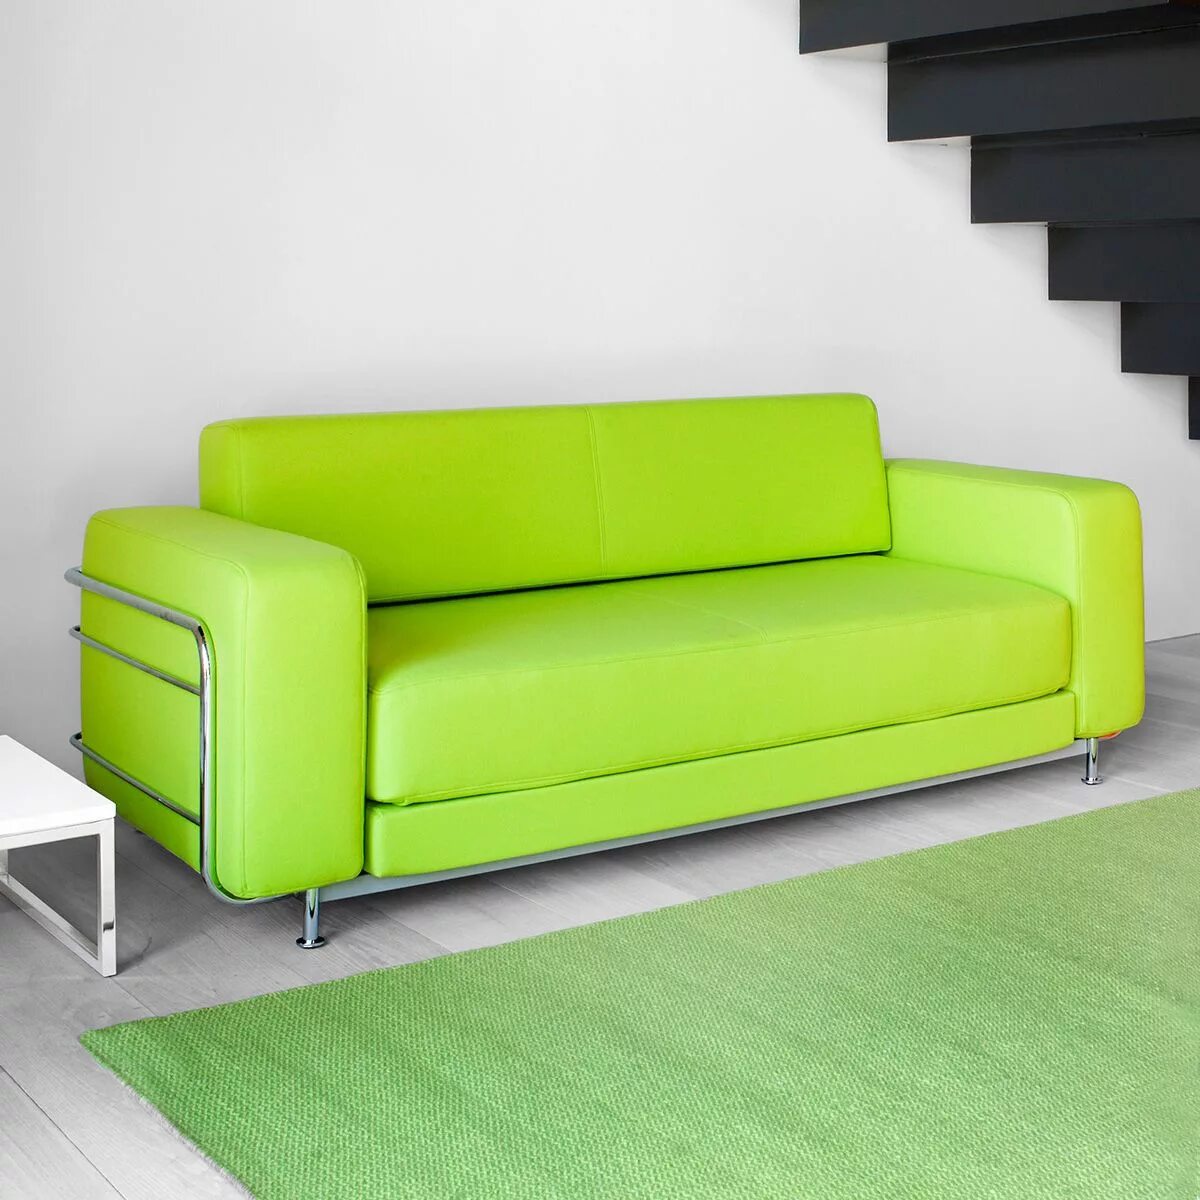 Купить диванчик. Диван Sylvain Sofa. Салатовый диван. Зеленый диван. Диван зеленого цвета.